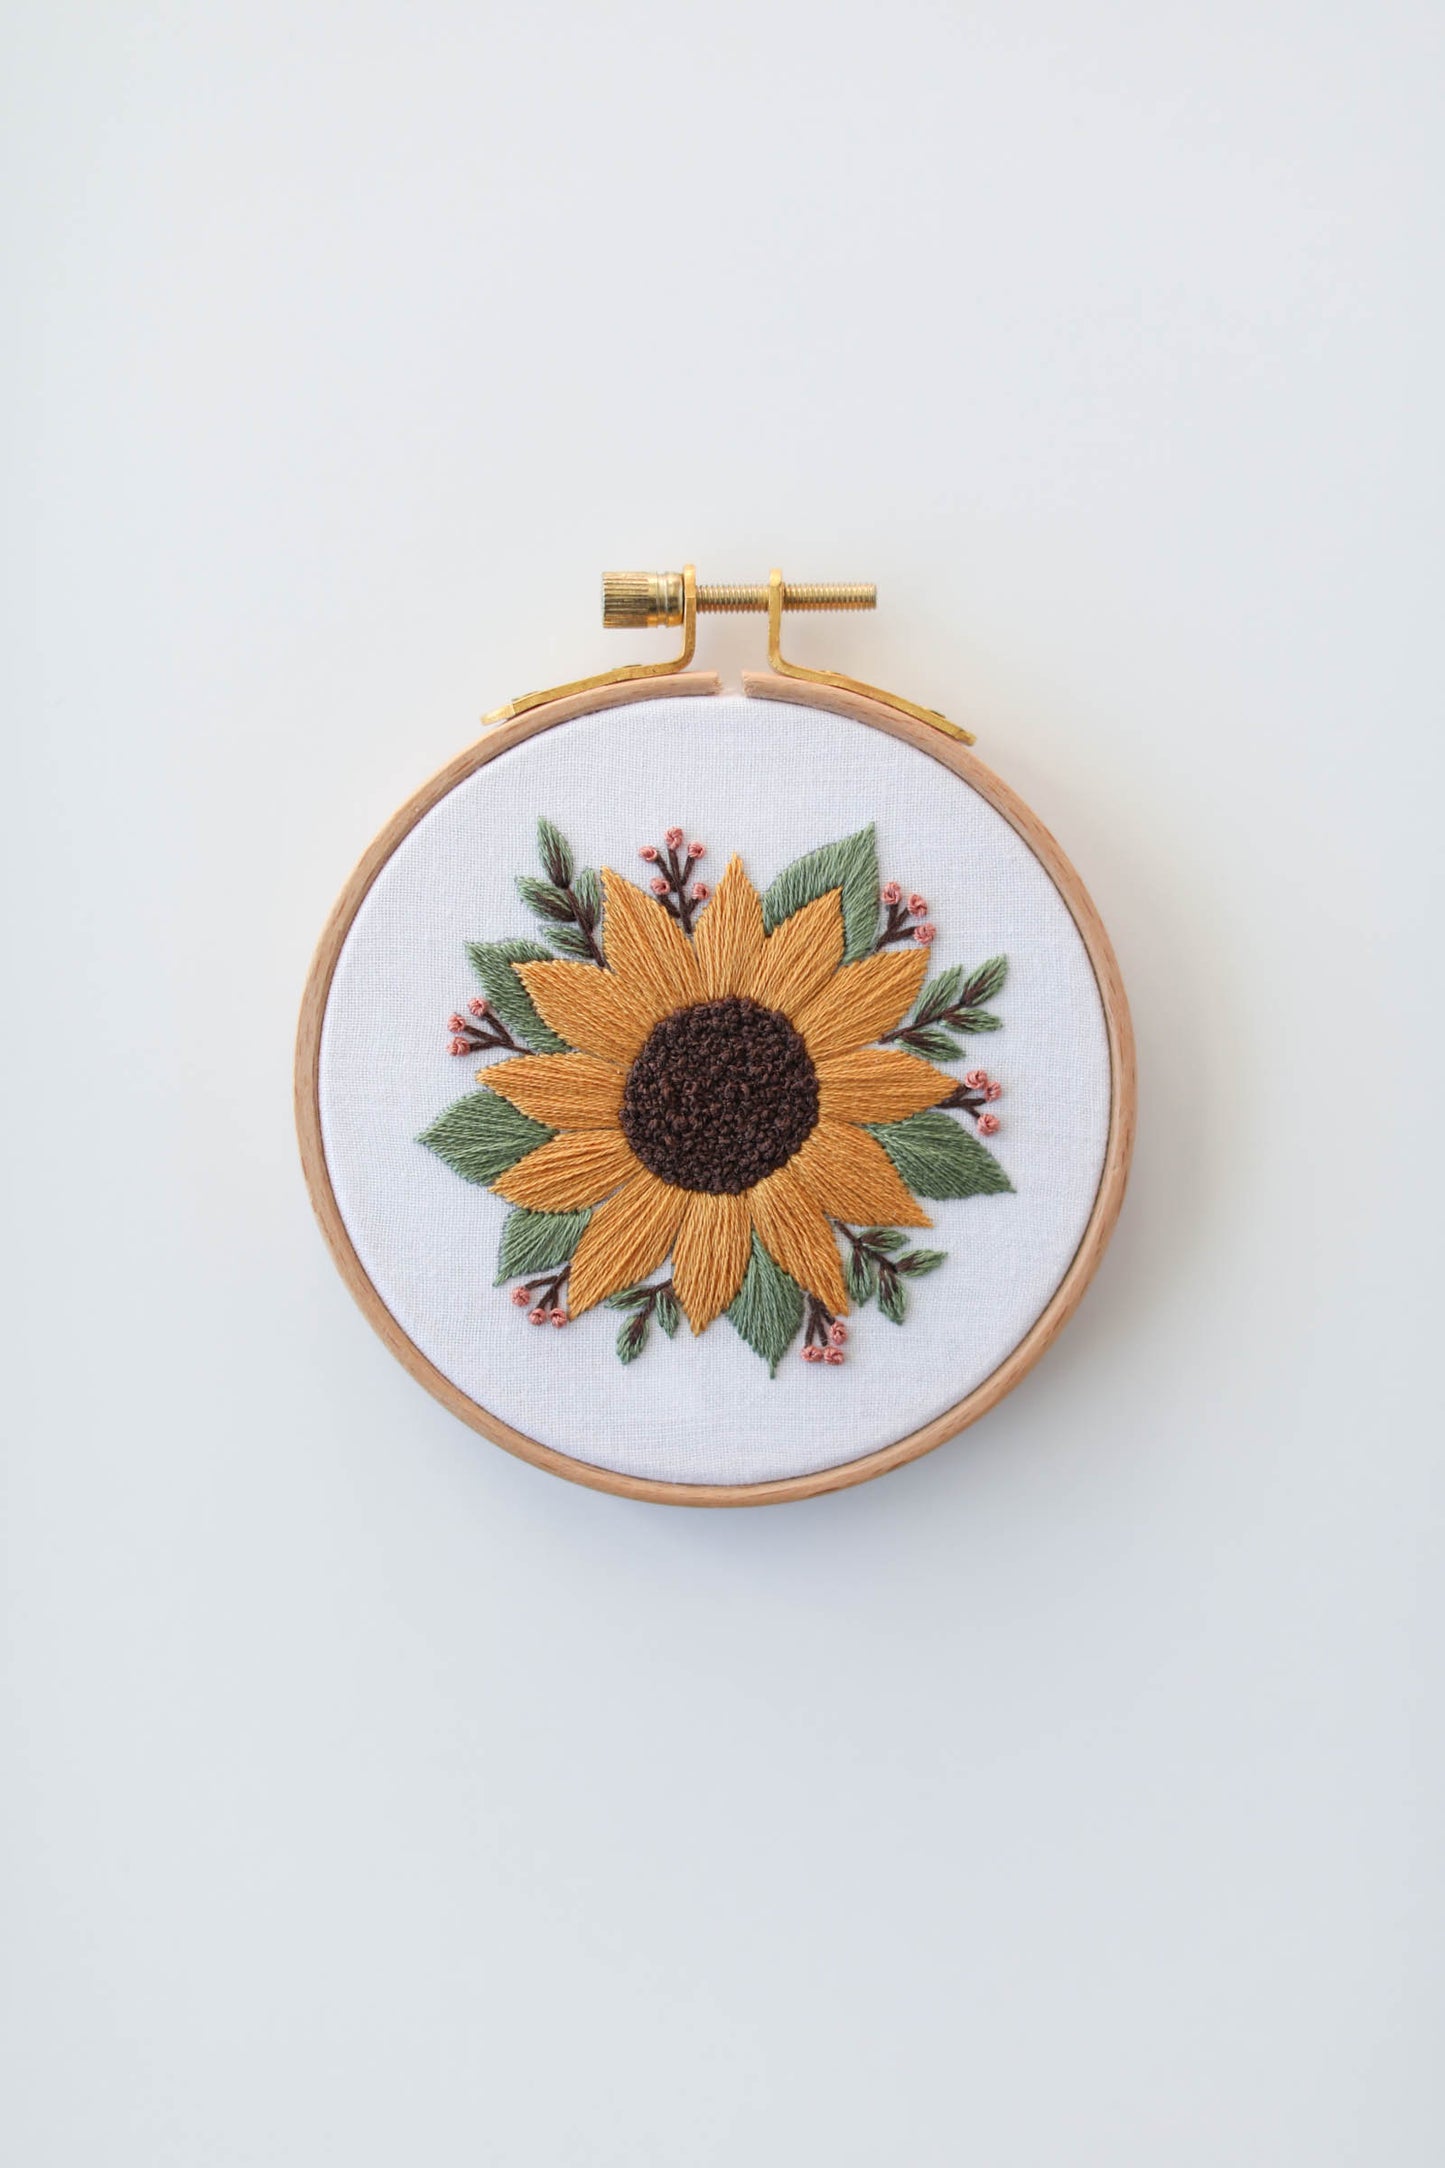 4" Sunflower Embroidery Kit - Beginner